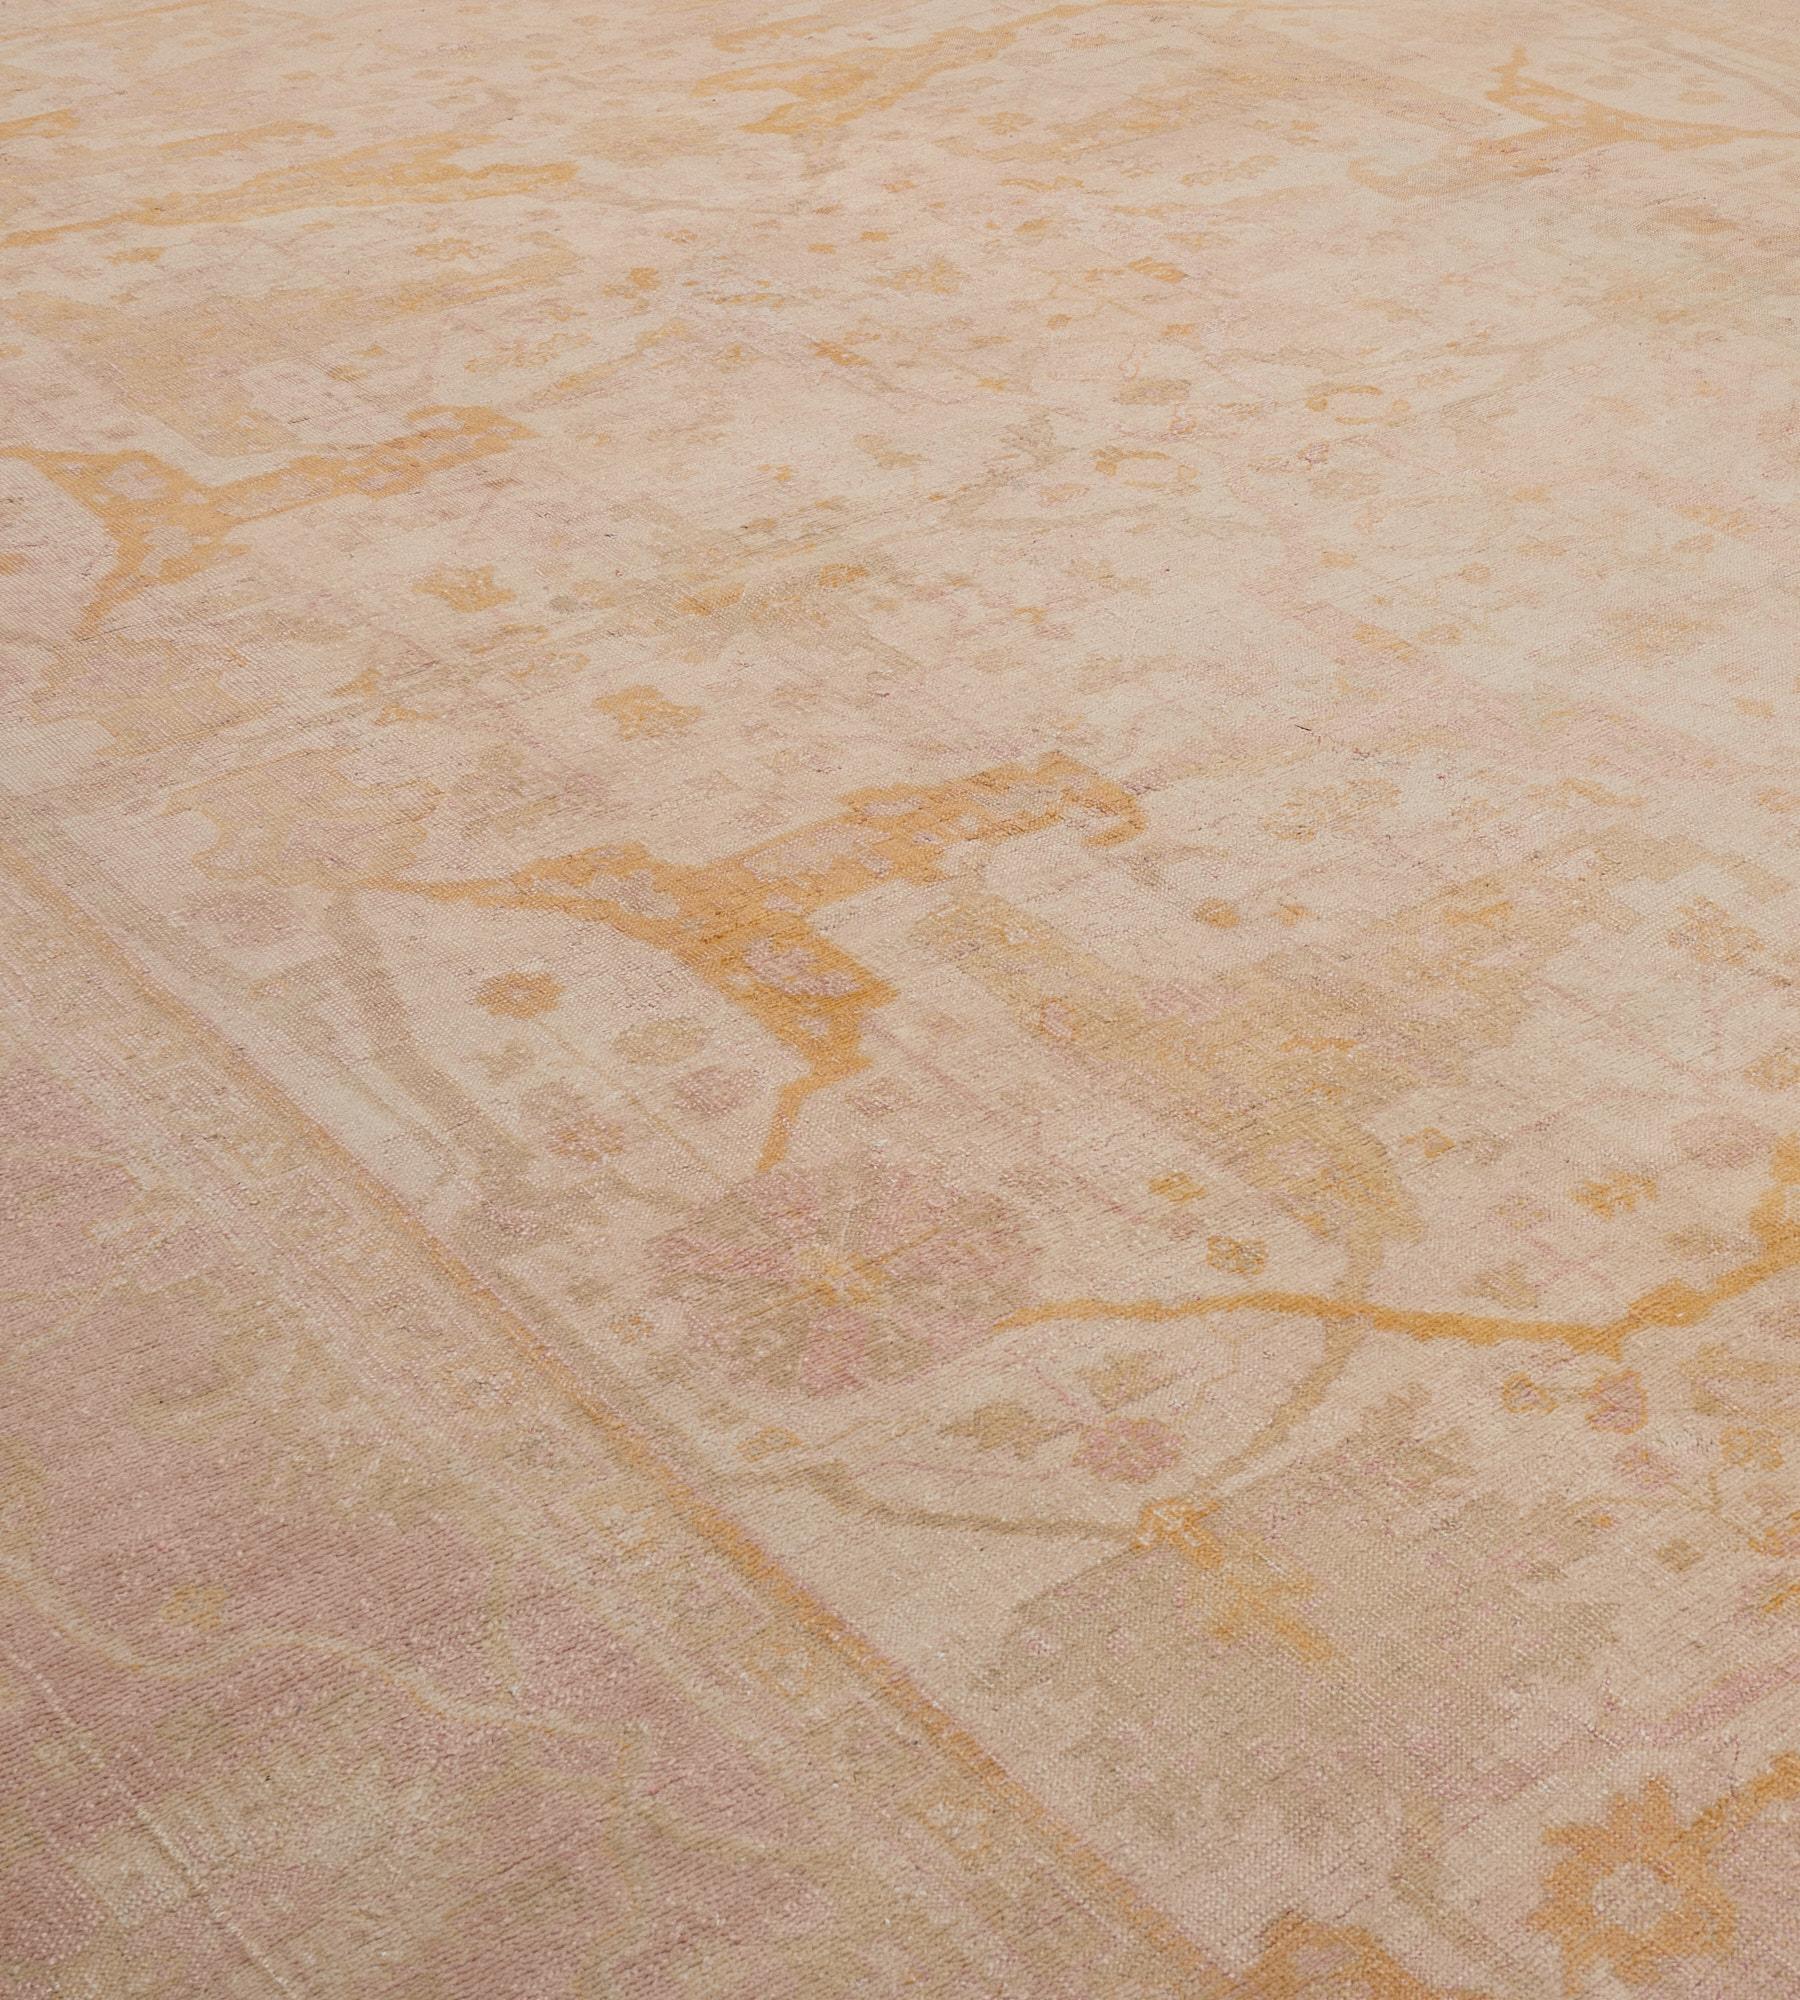 Dieser antike Oushak-Teppich hat ein elfenbeinfarbenes Feld mit einem Gesamtmuster aus karamellbraunen und schattierten hellgrauen geteilten Palmettenranken, die kräftige staubrosa und hellgraue Palmetten- und Blumenranken miteinander verbinden, in